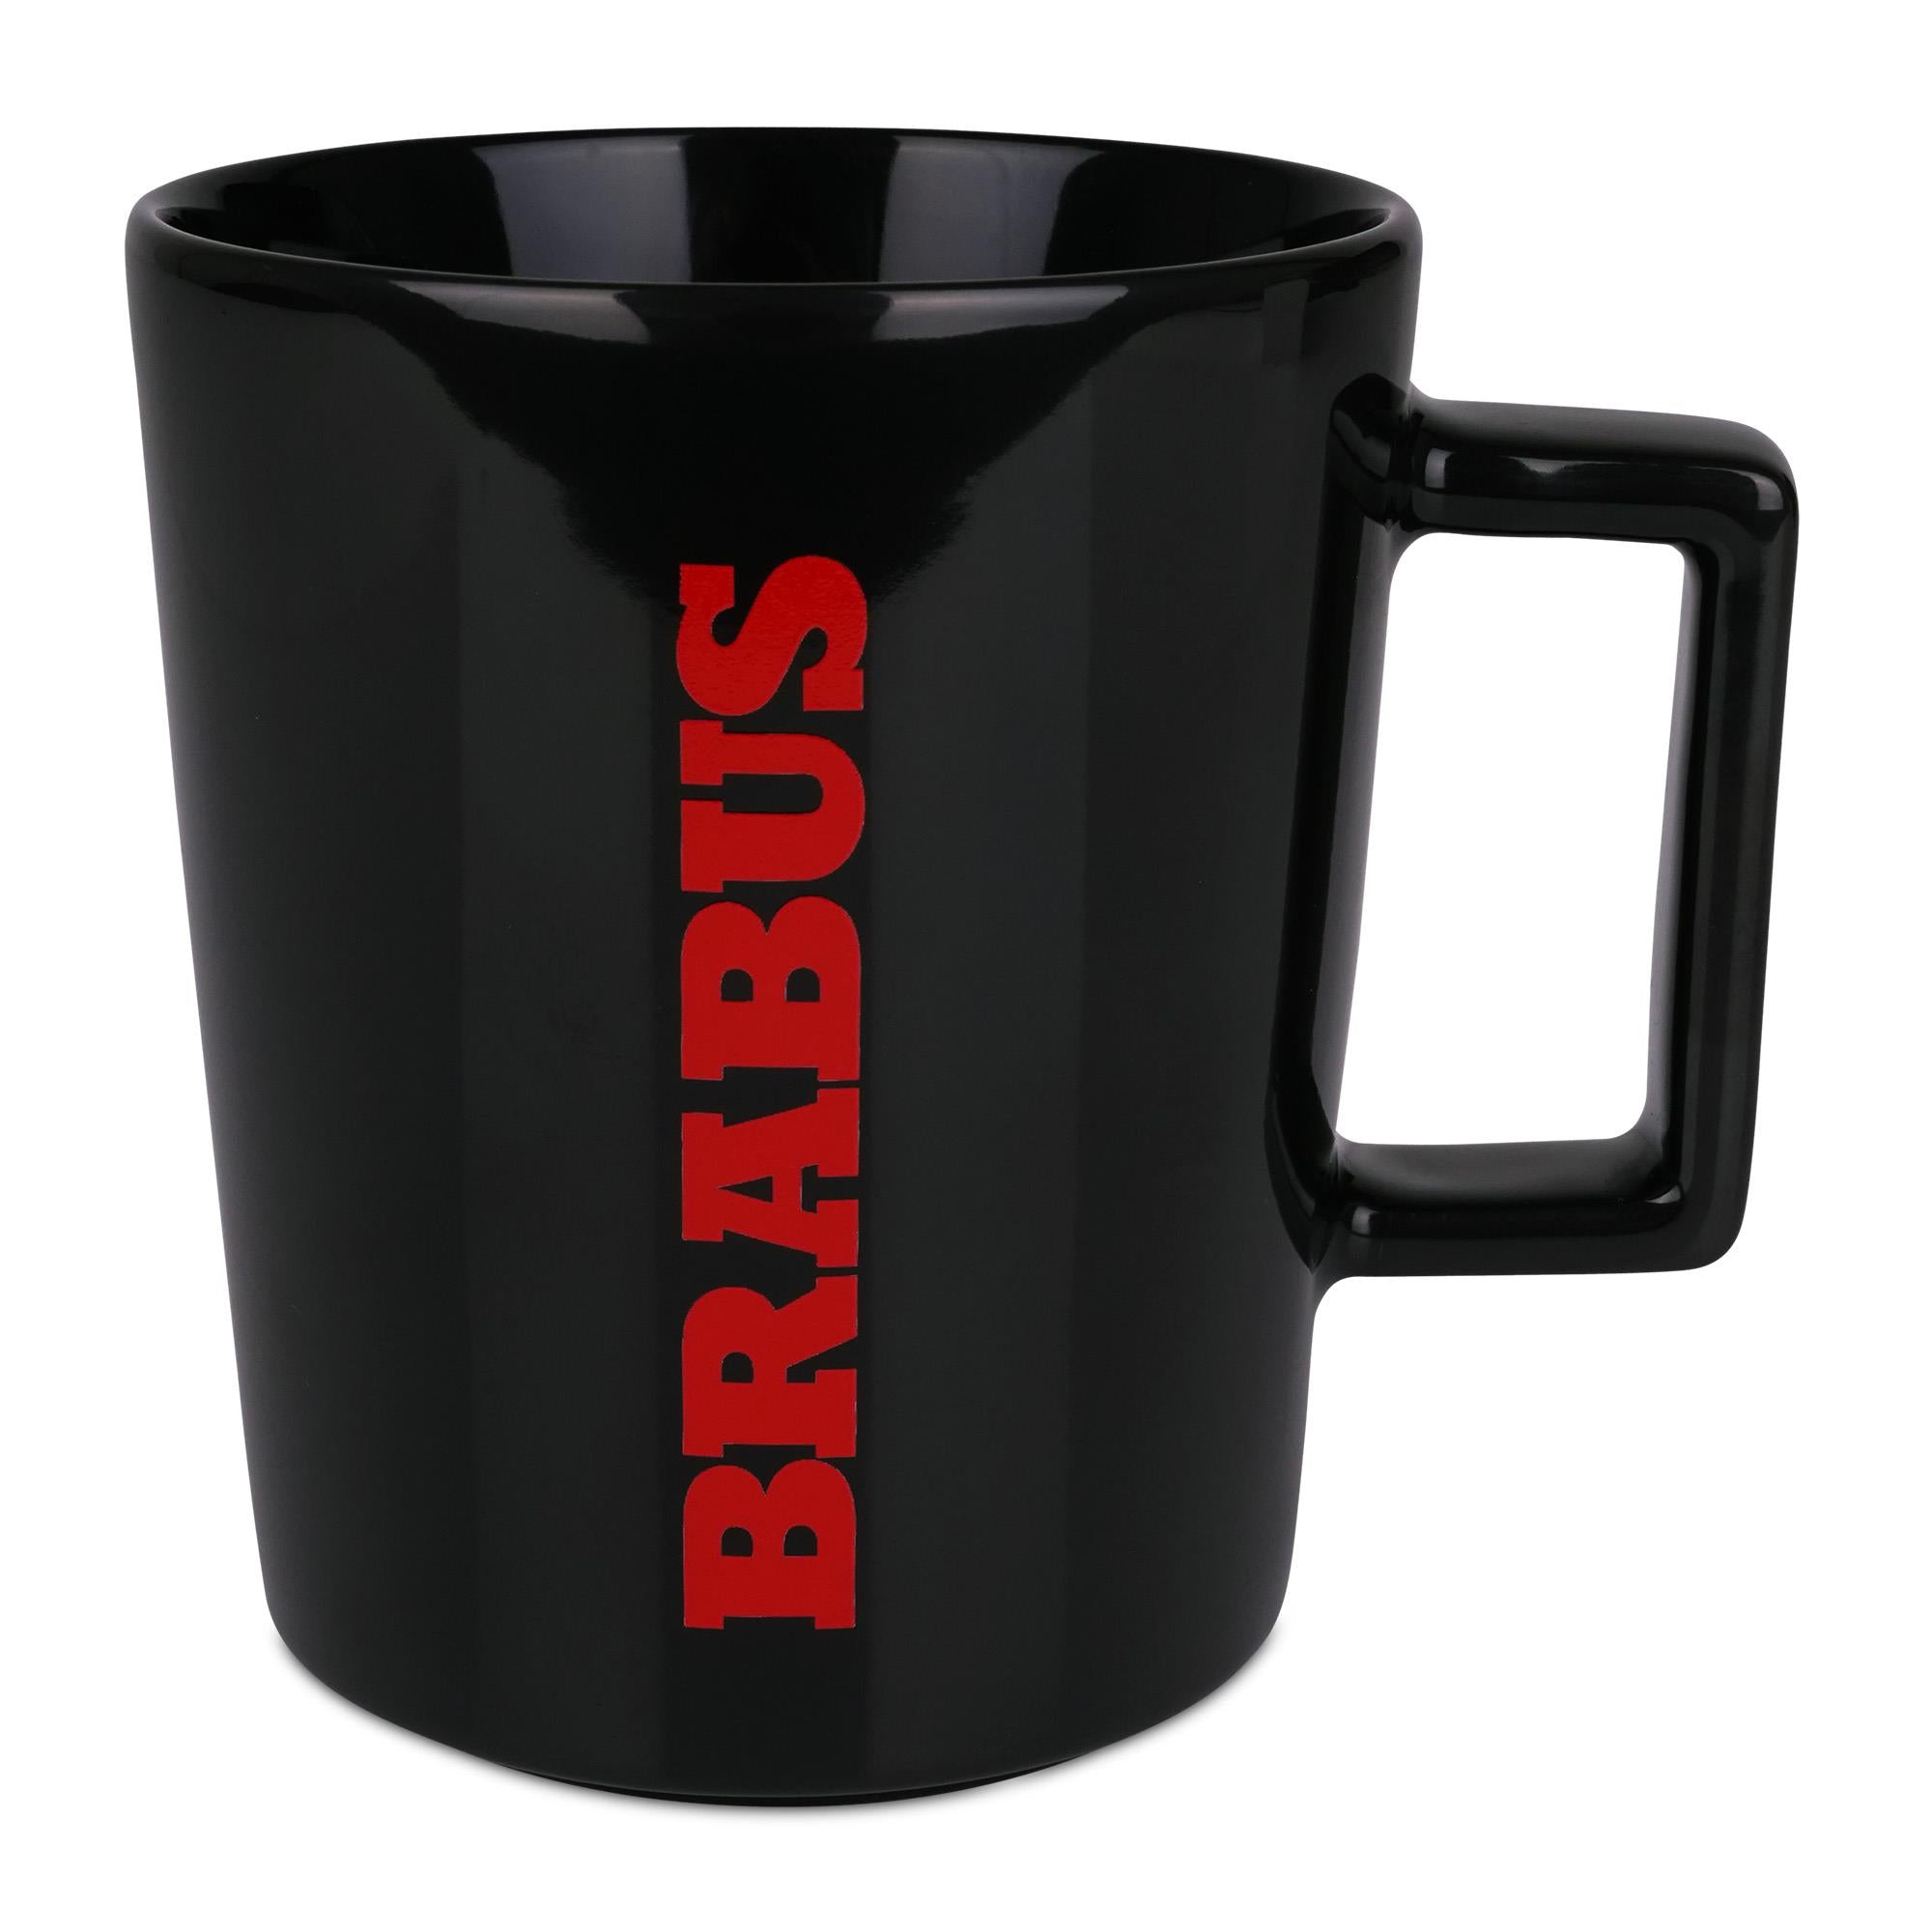 BRABUS coffee mug black 